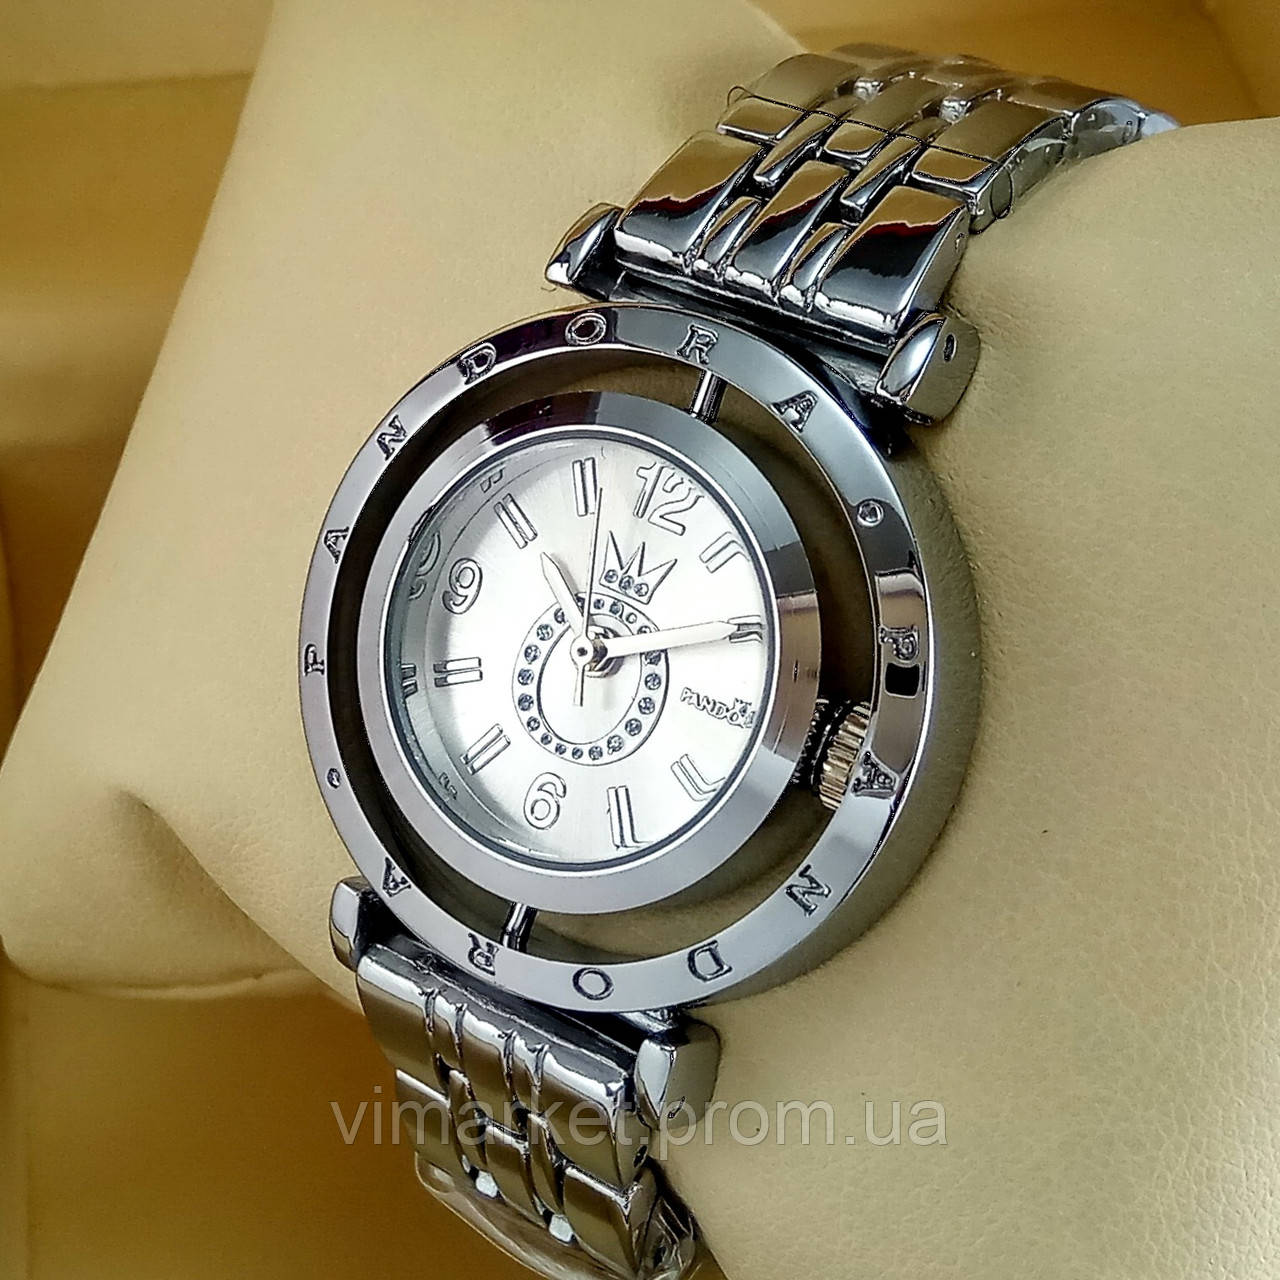 Жіночі наручні годинники Pandora T104 mini срібного кольору з сріблястим циферблатом на металевому браслеті